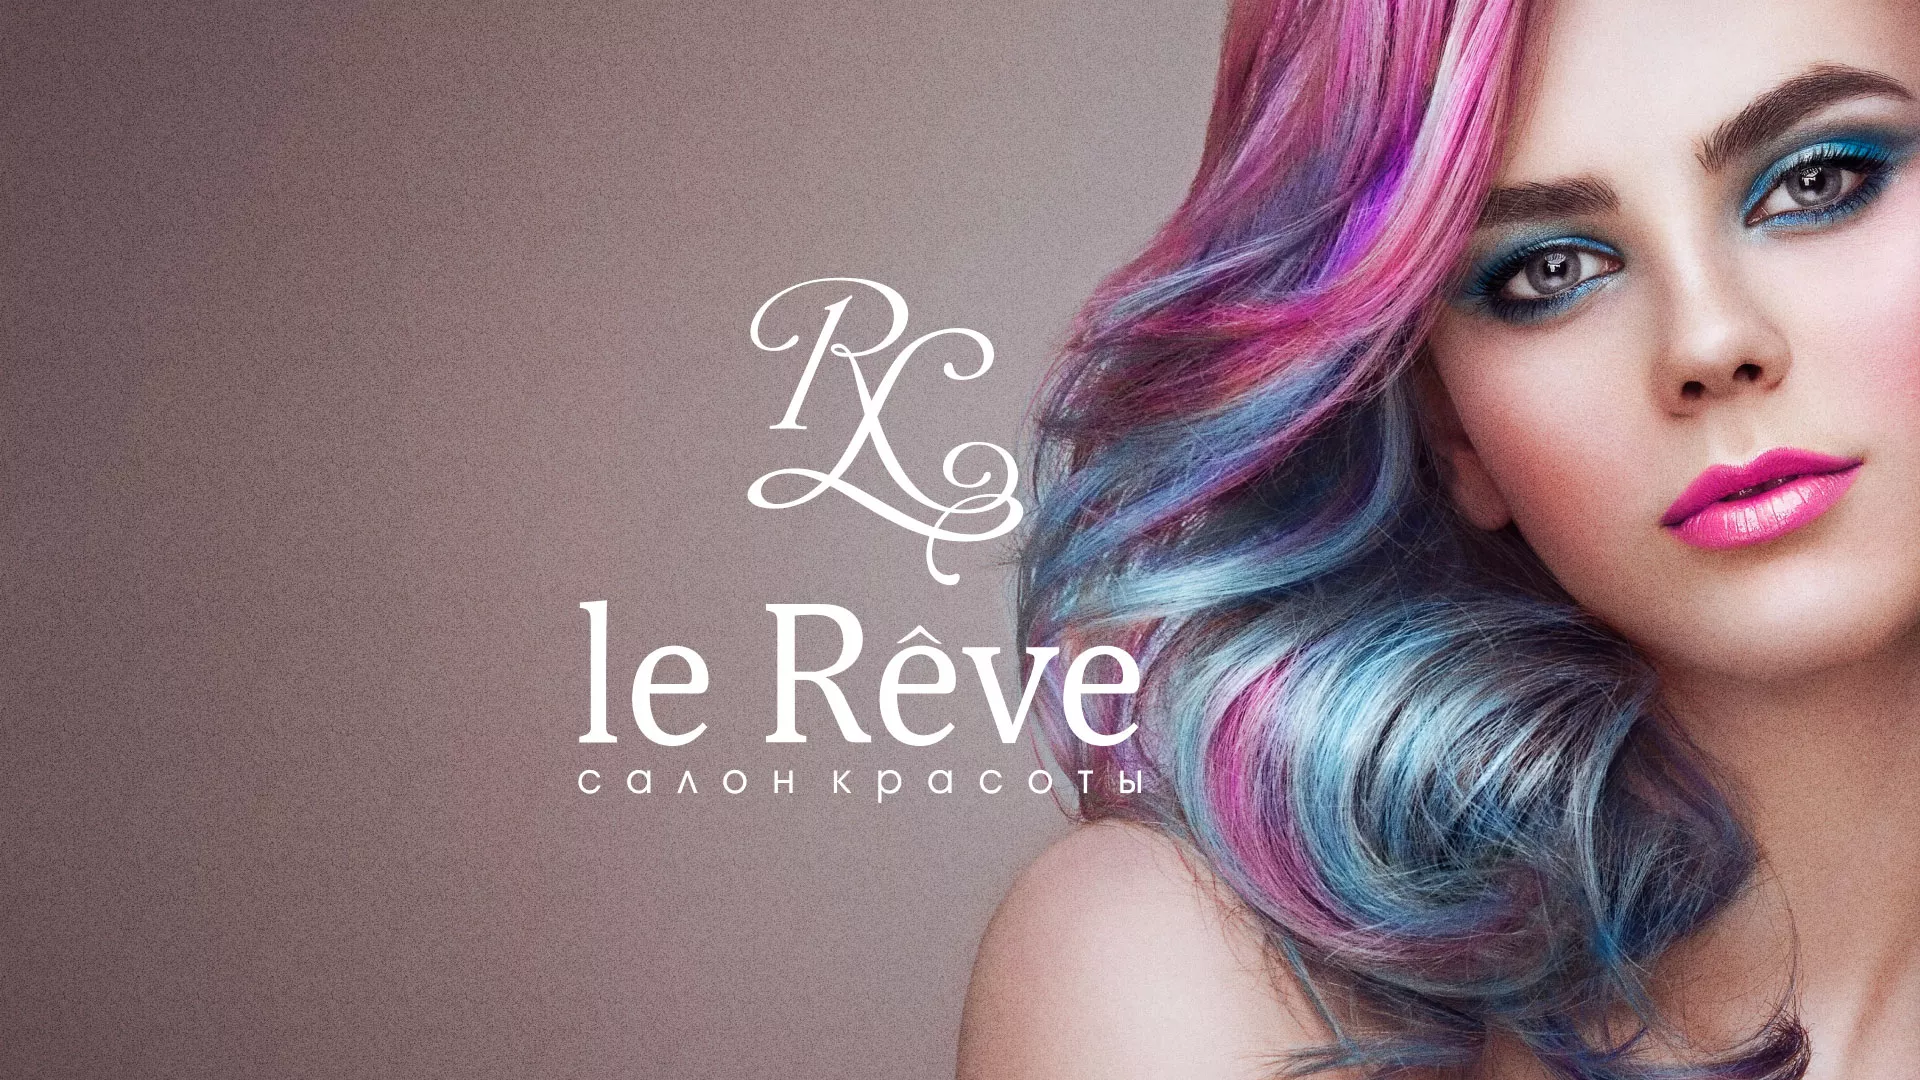 Создание сайта для салона красоты «Le Reve» в Каргополе